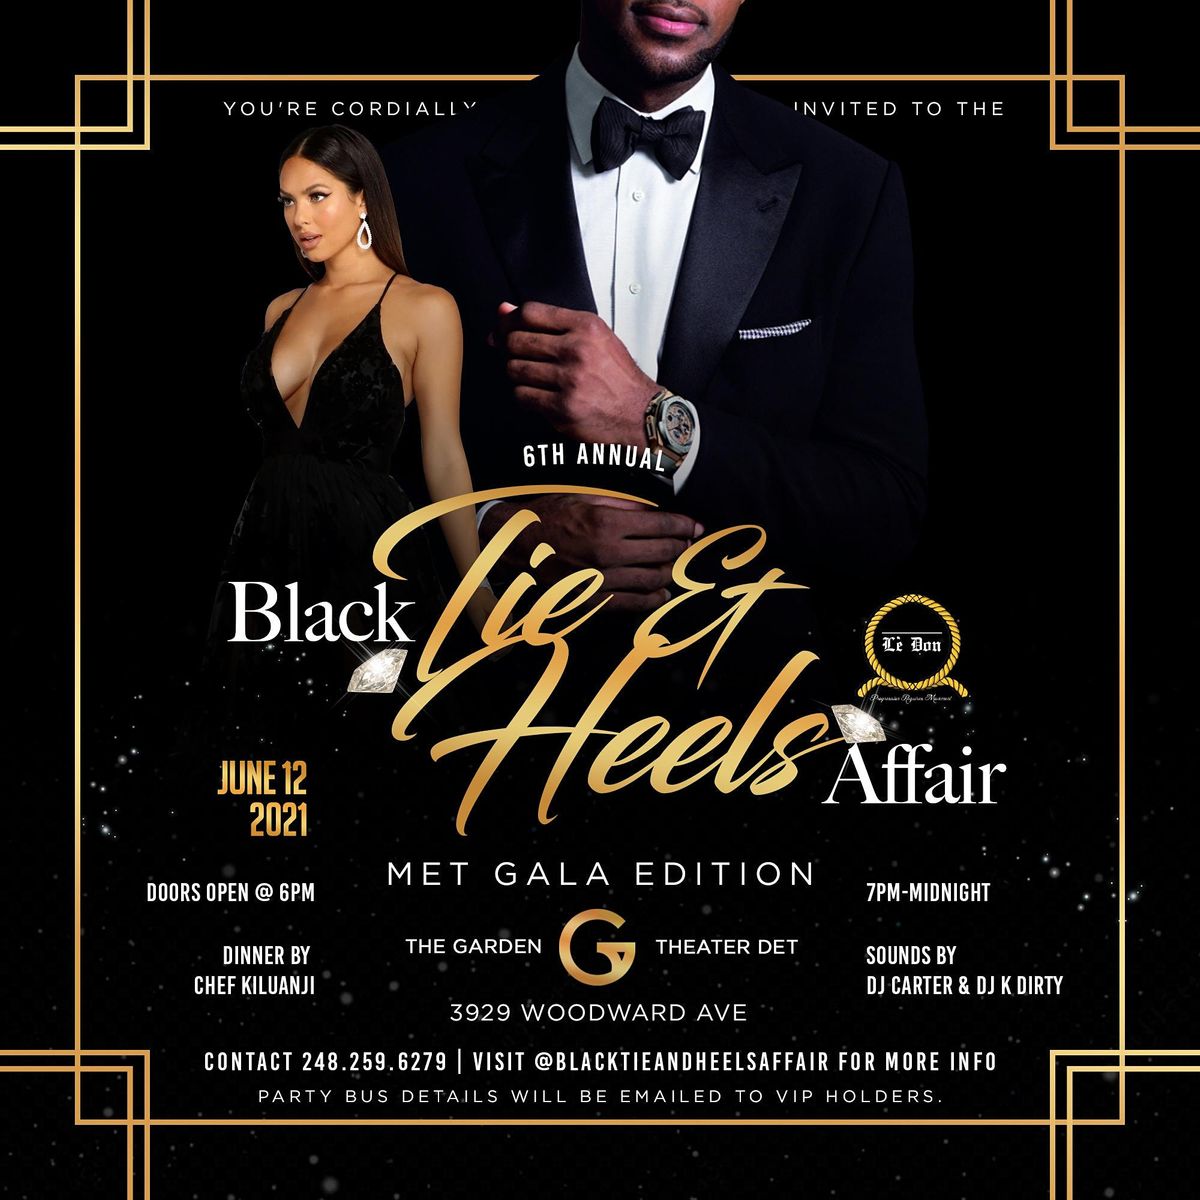 6th Annual Black Tie & Heels Affair : MET GALA EDITION